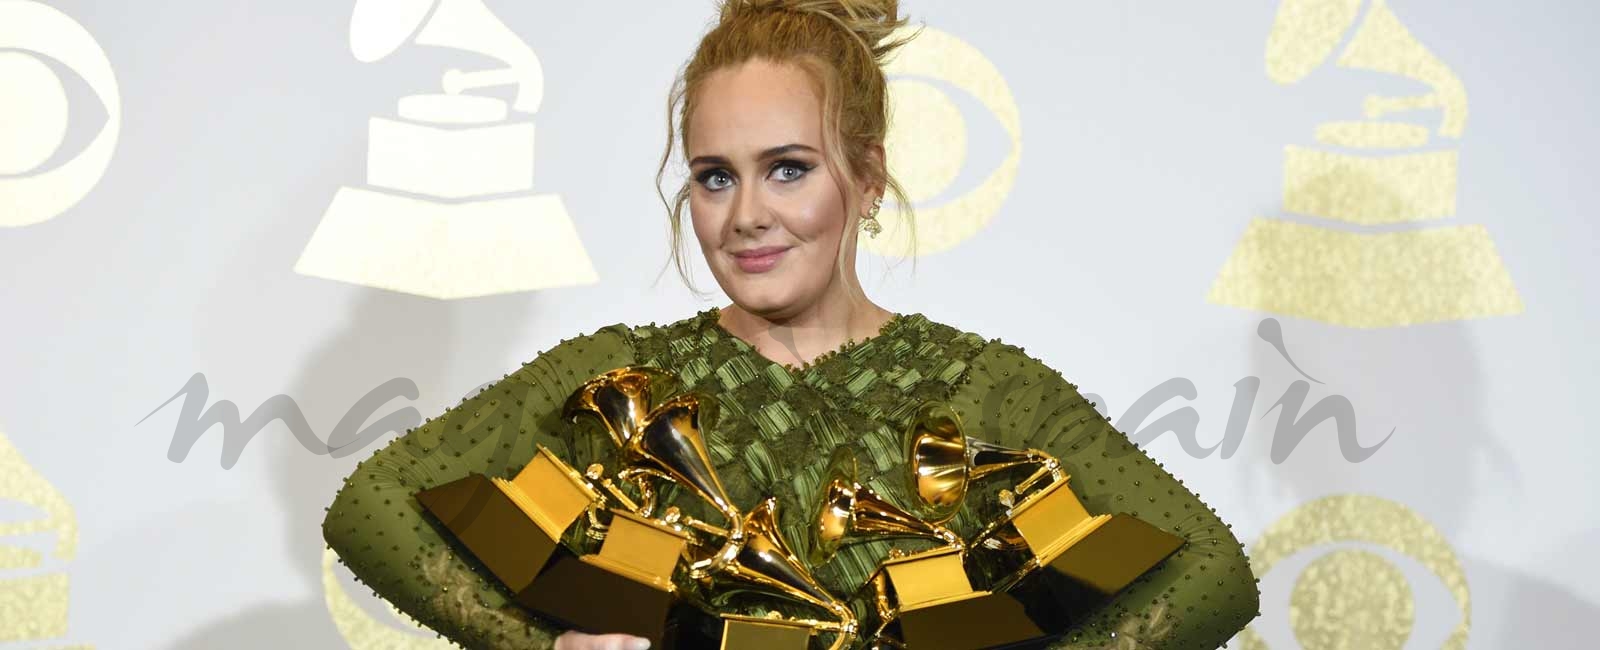 Así eran, Así son: Adele 2008-2018